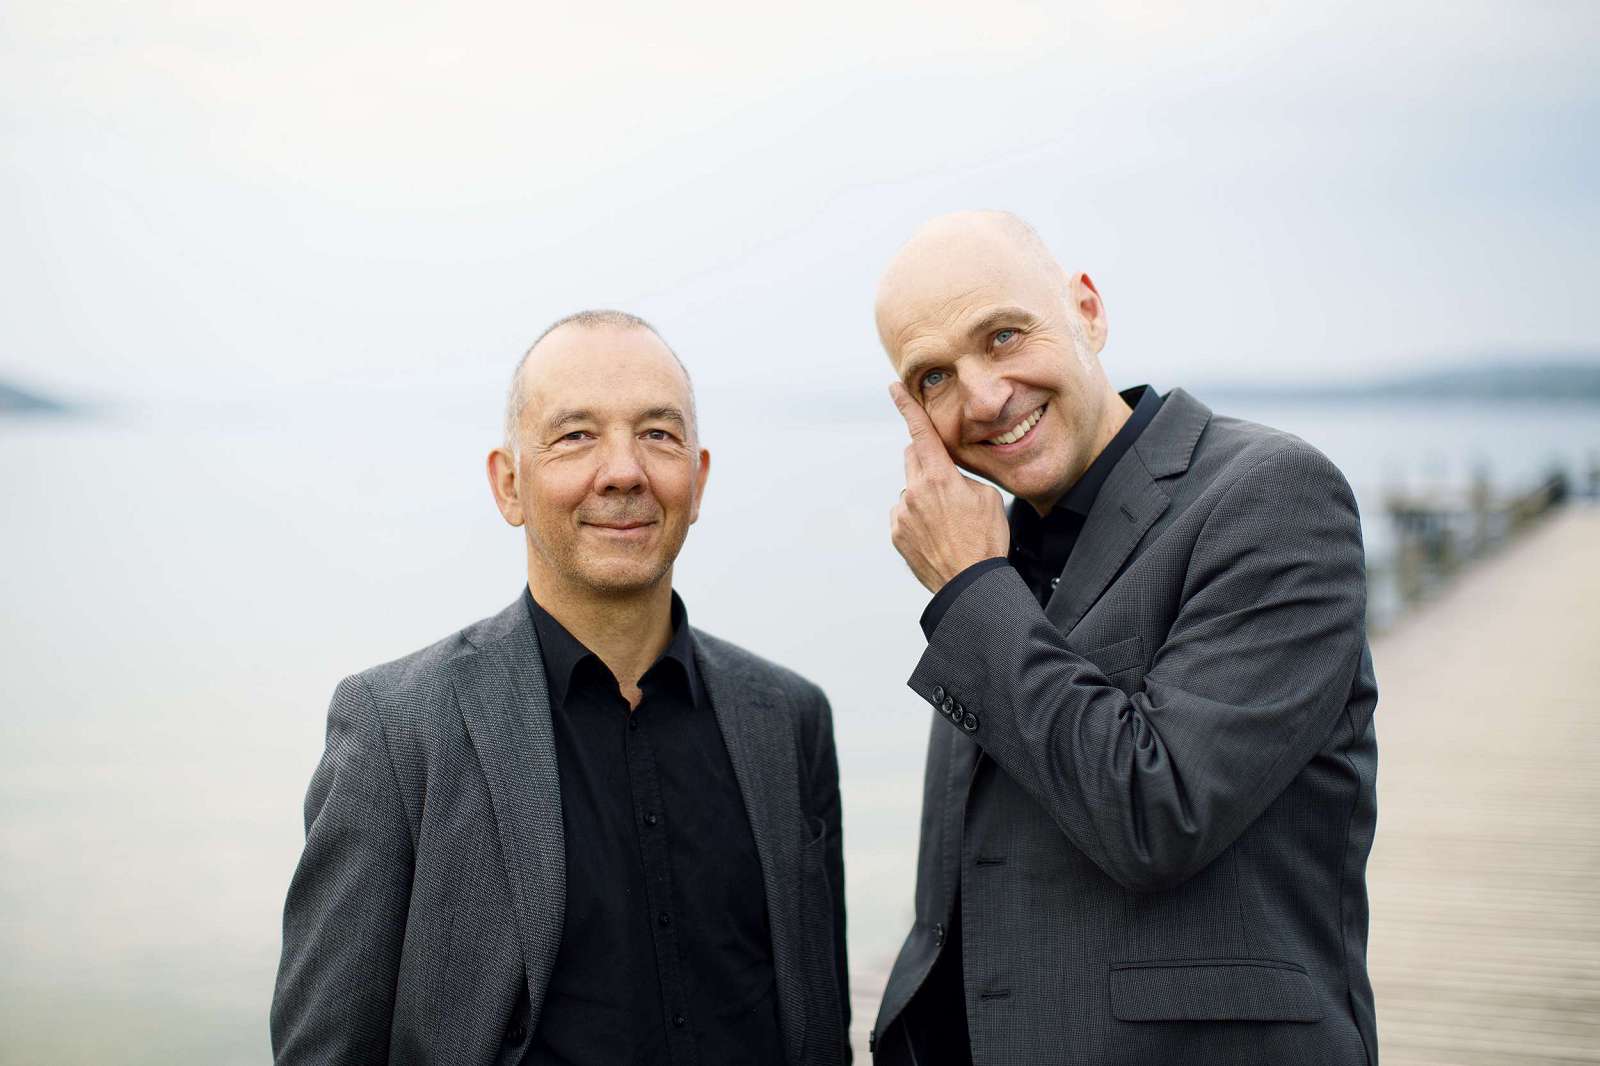 Musikerportrait von Axel Wolf und Hugo Siegmeth für das Projekt „NOW“ bei Oehms Records